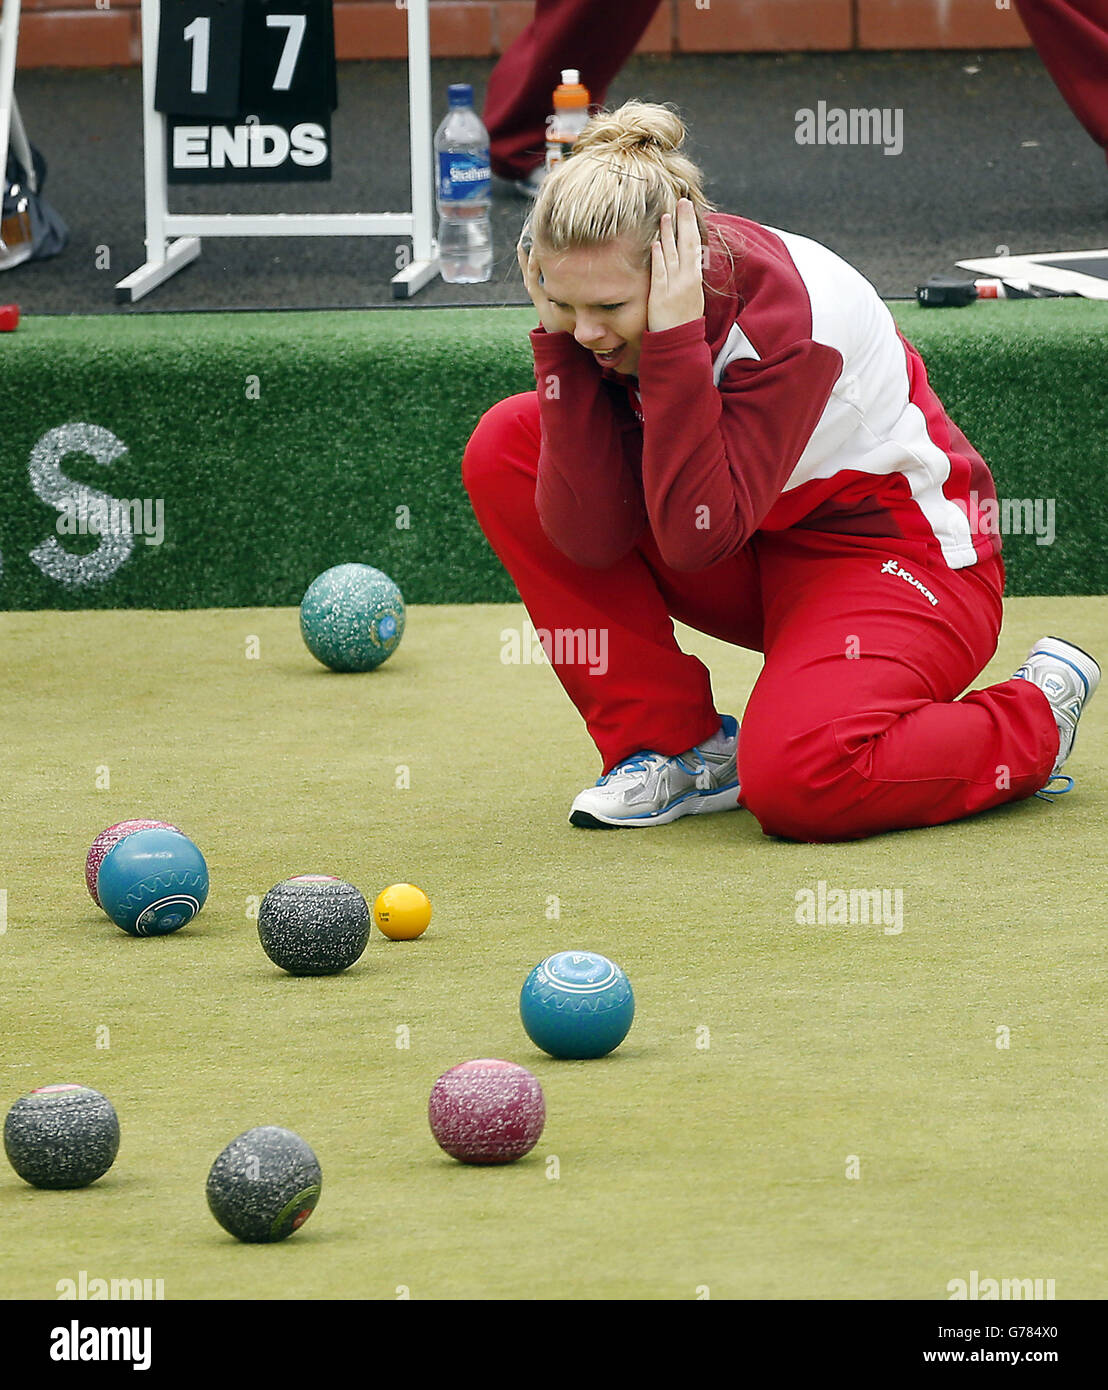 Jamie-Lea Winch während des Women's Pairs Finales im Kelvingrove Lawn Bowls Center, während der Commonwealth Games 2014 in Glasgow. Stockfoto